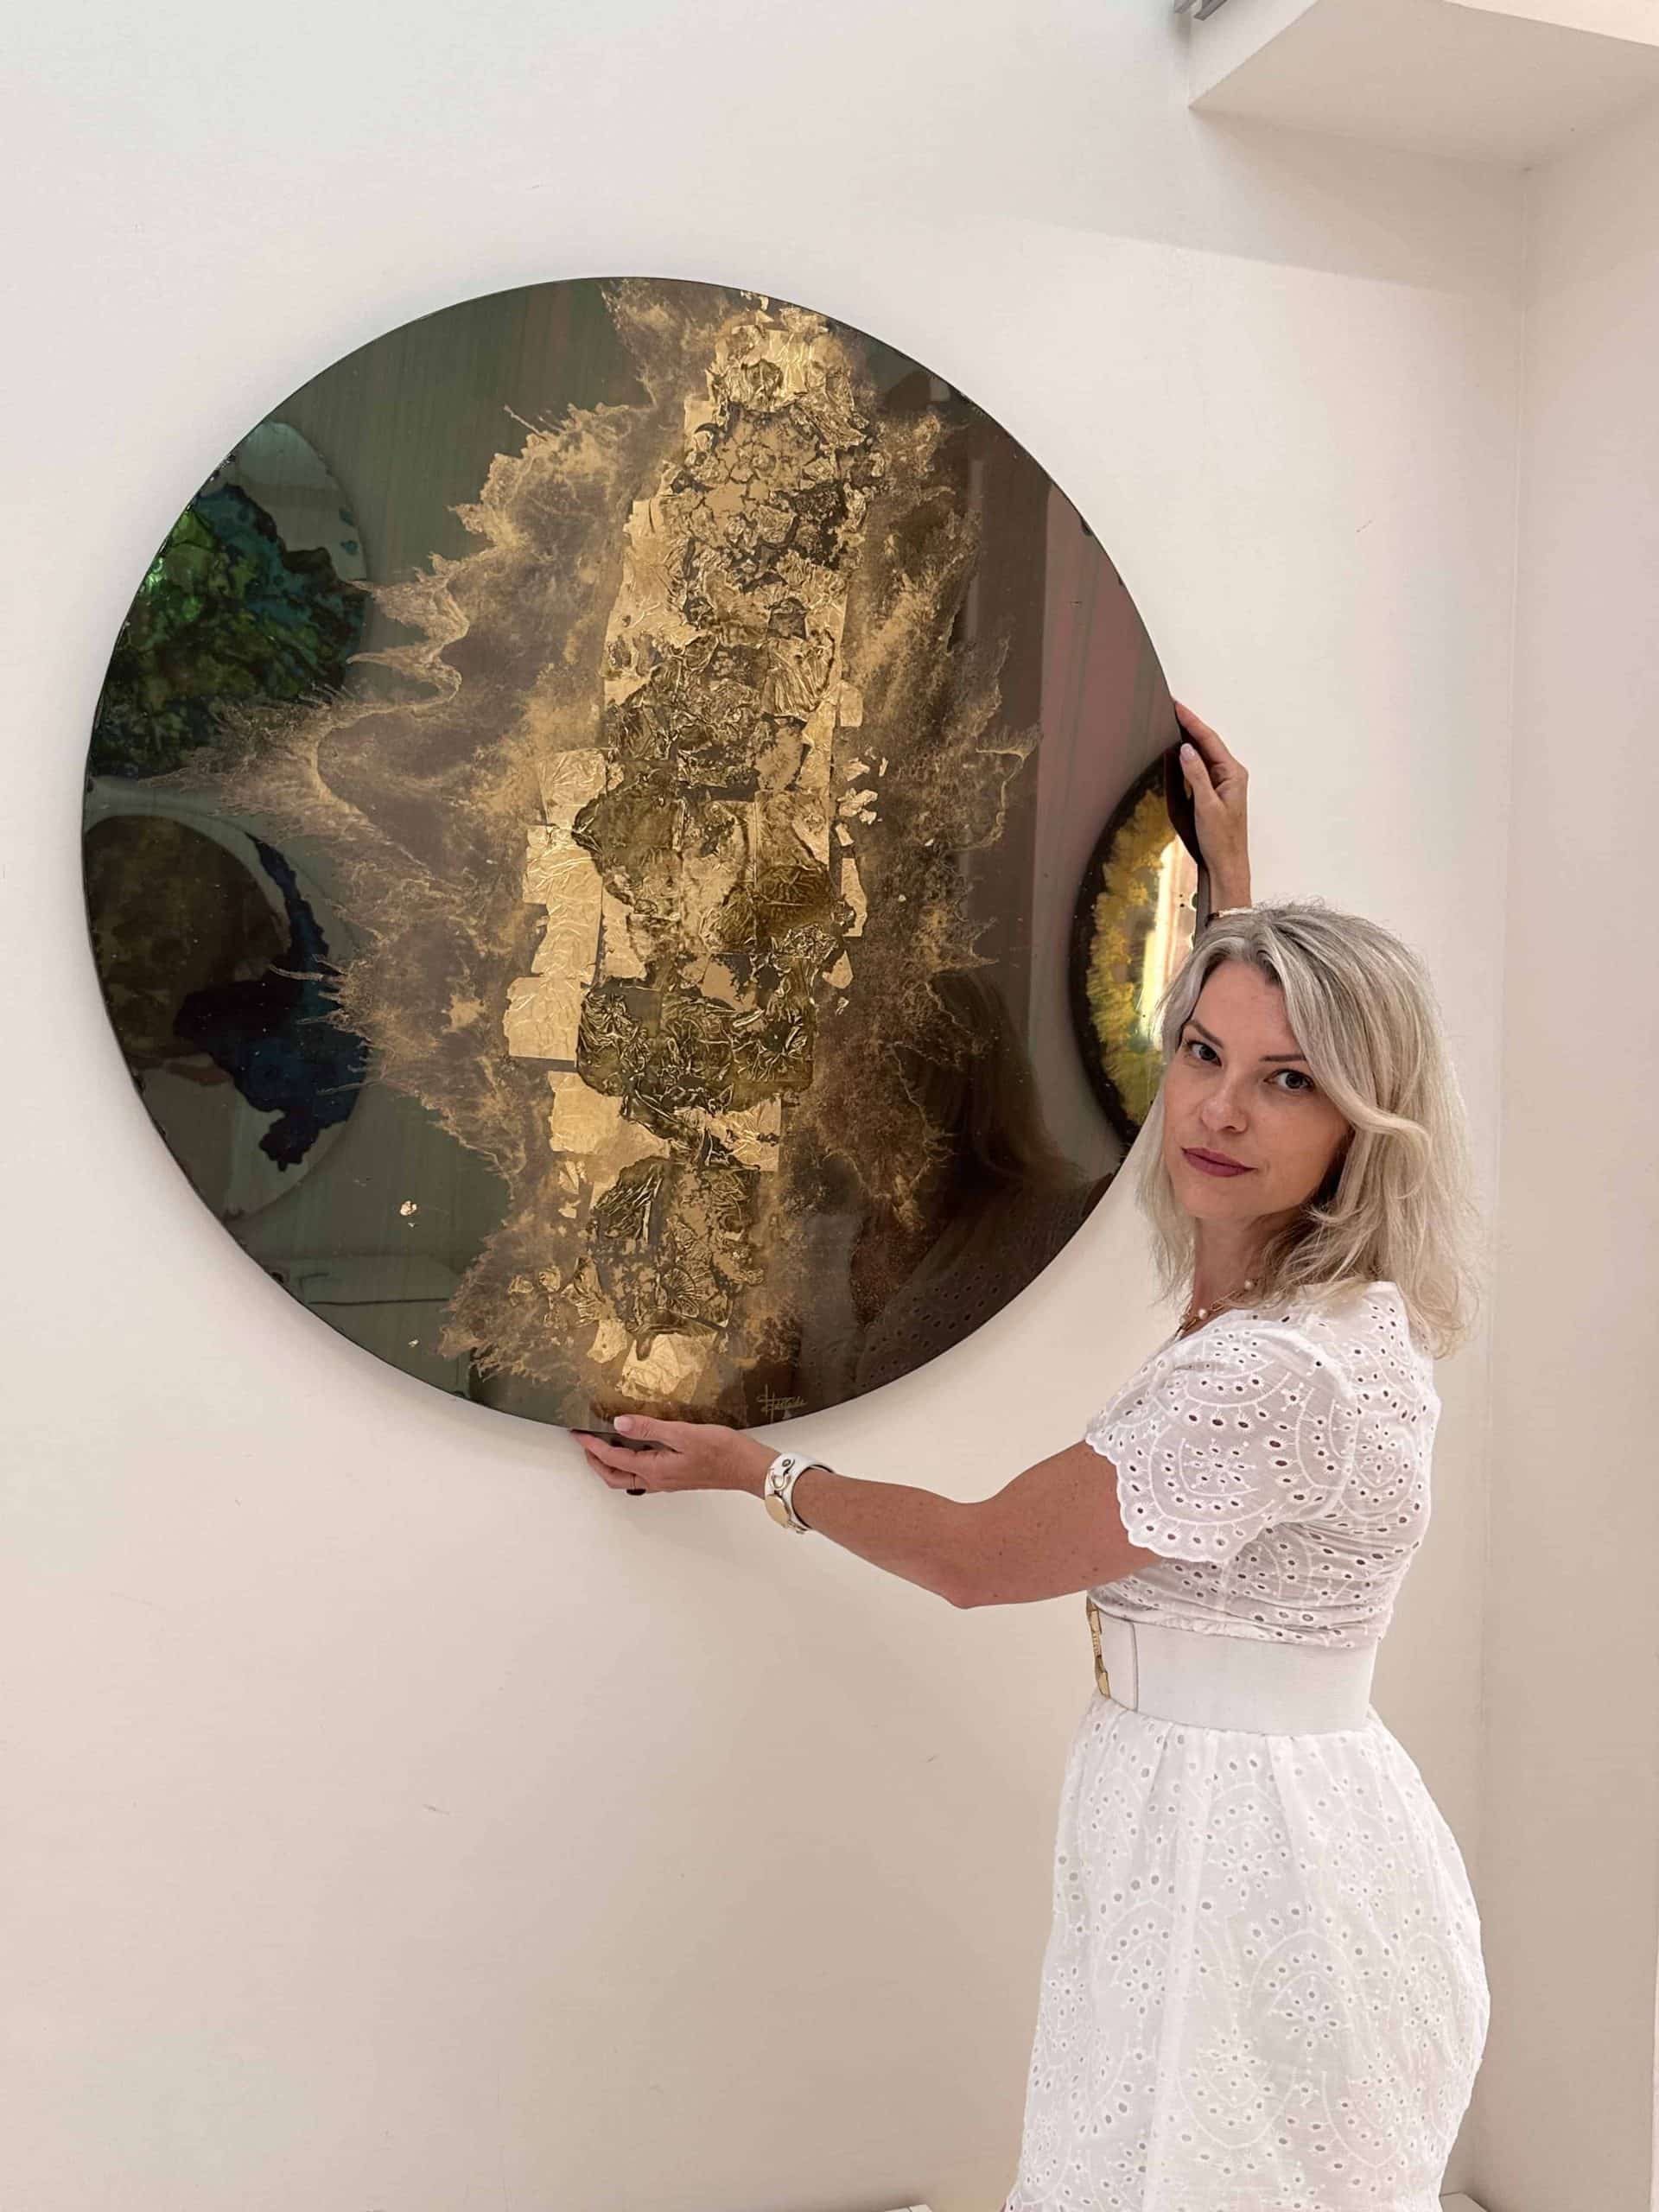 Adelaïde Leferme devant un Miroir Peint lors de son exposition Galerie Choiseul